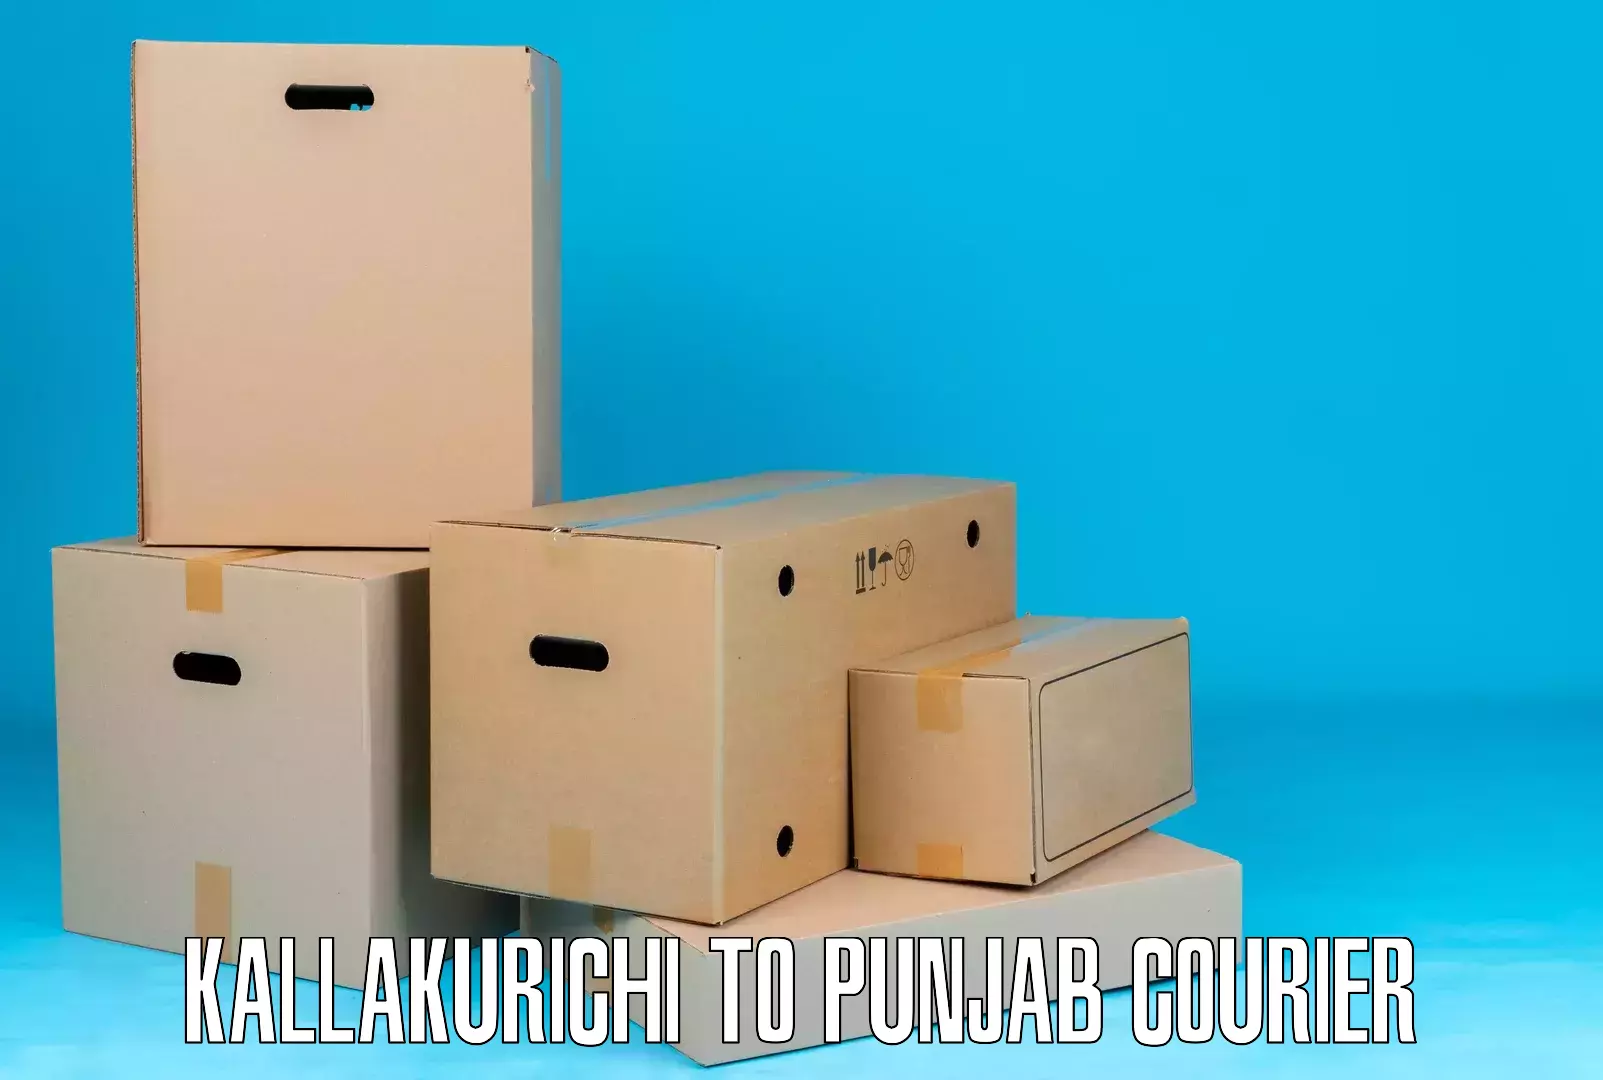 Customizable shipping options Kallakurichi to Malout